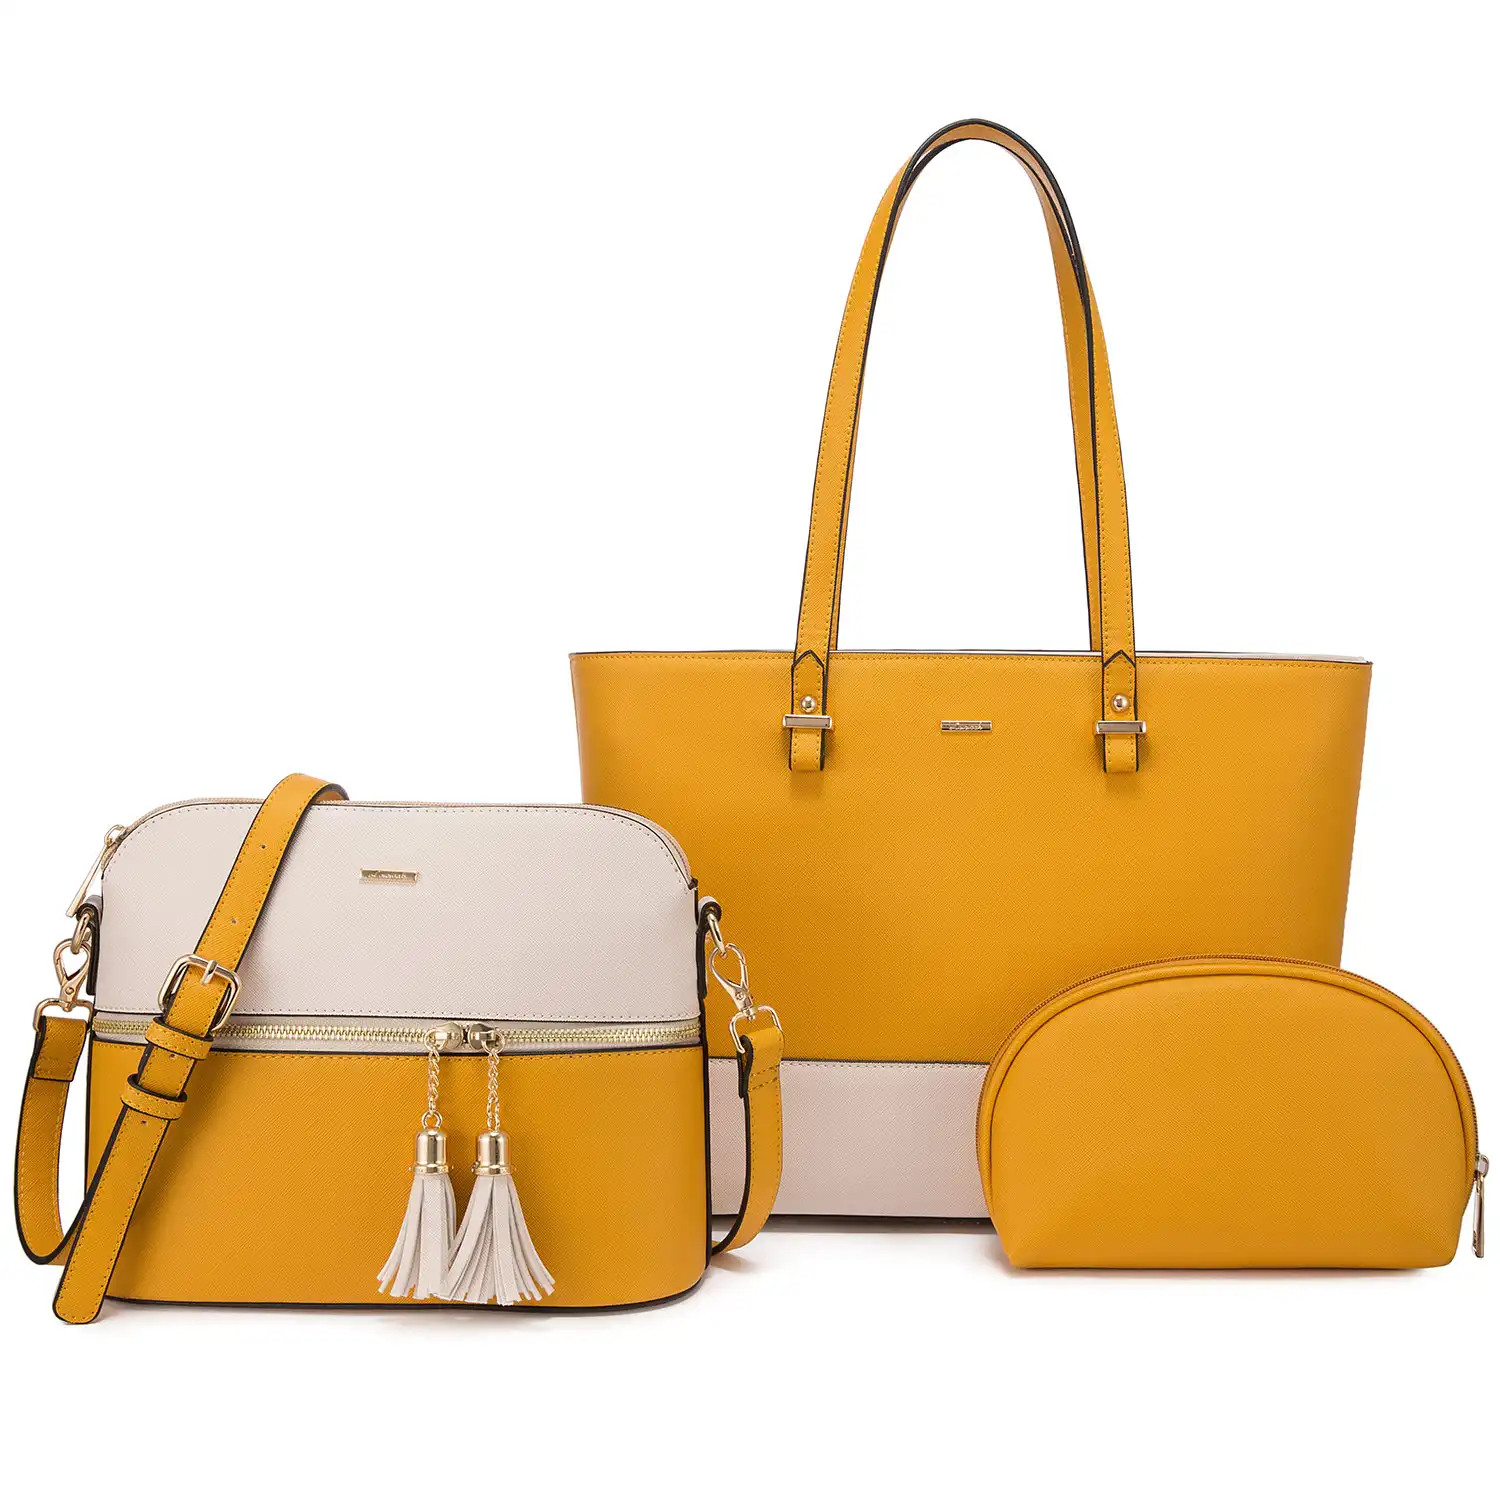 Lovevook ब्रांड कस्टम हैंडबैग 3 pcs सेट OEM ODM डिजाइन फैशन ढोना बैग महिलाओं के पर्स और हैंडबैग महिलाओं के हाथ बैग महिलाओं के लिए